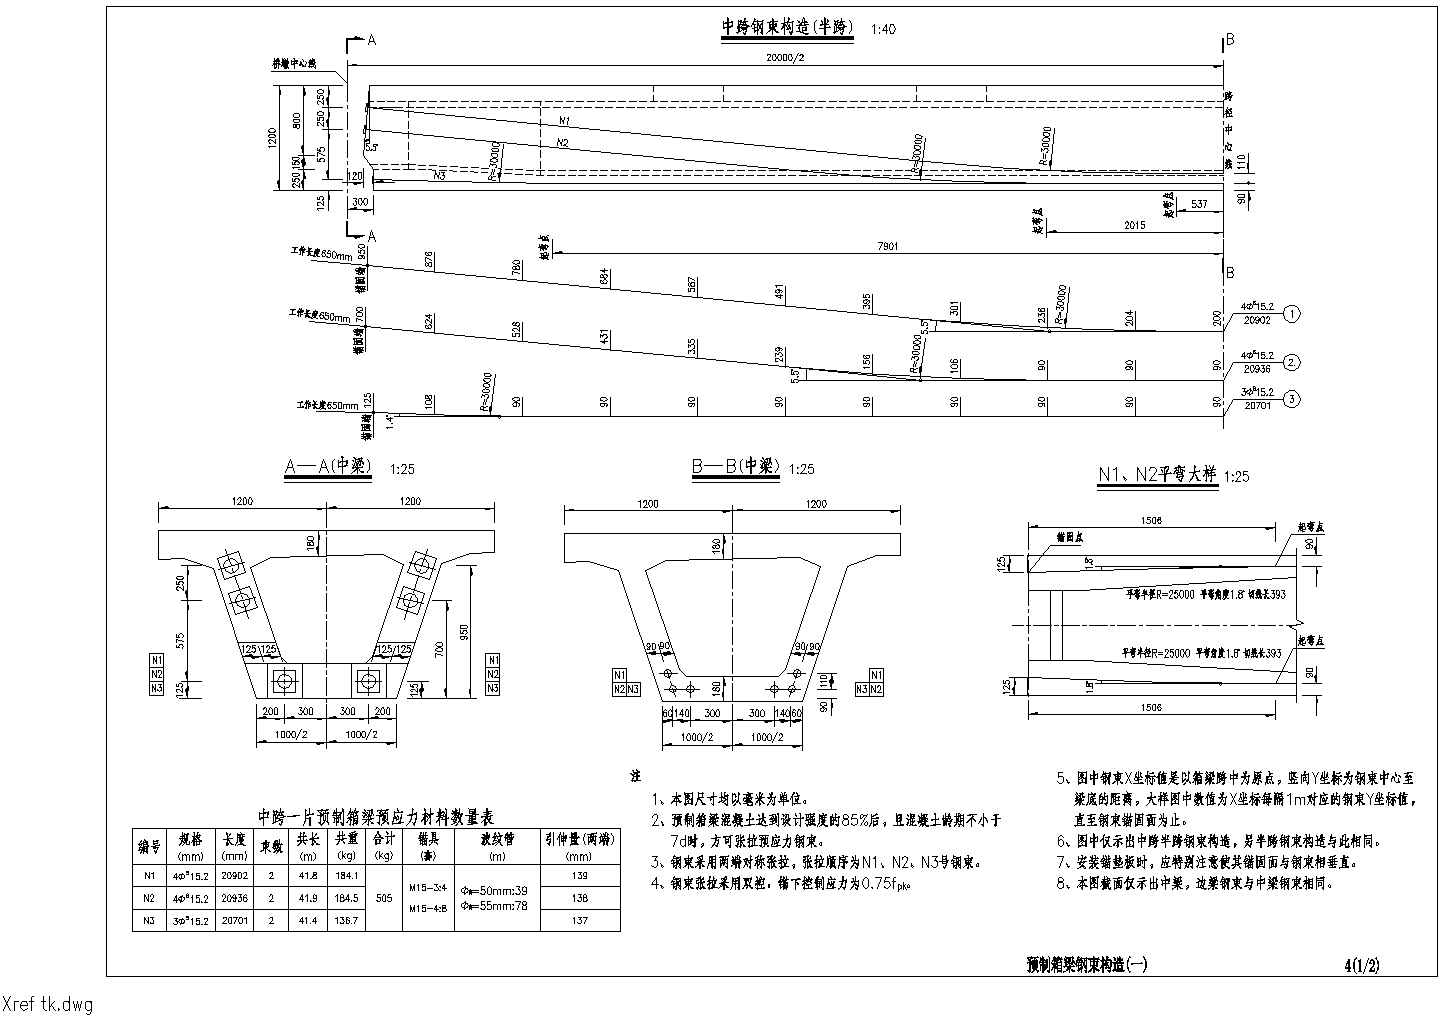 装配式预应力砼箱形连续梁桥上部构造标准通用设计施工图